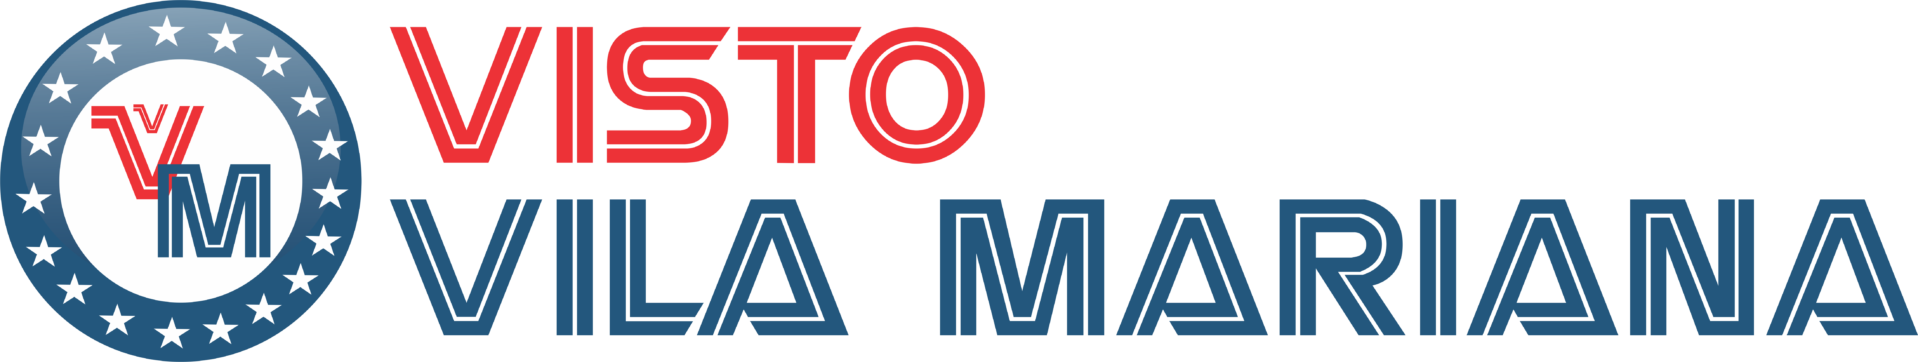 Logotipo Visto Vila Mariana